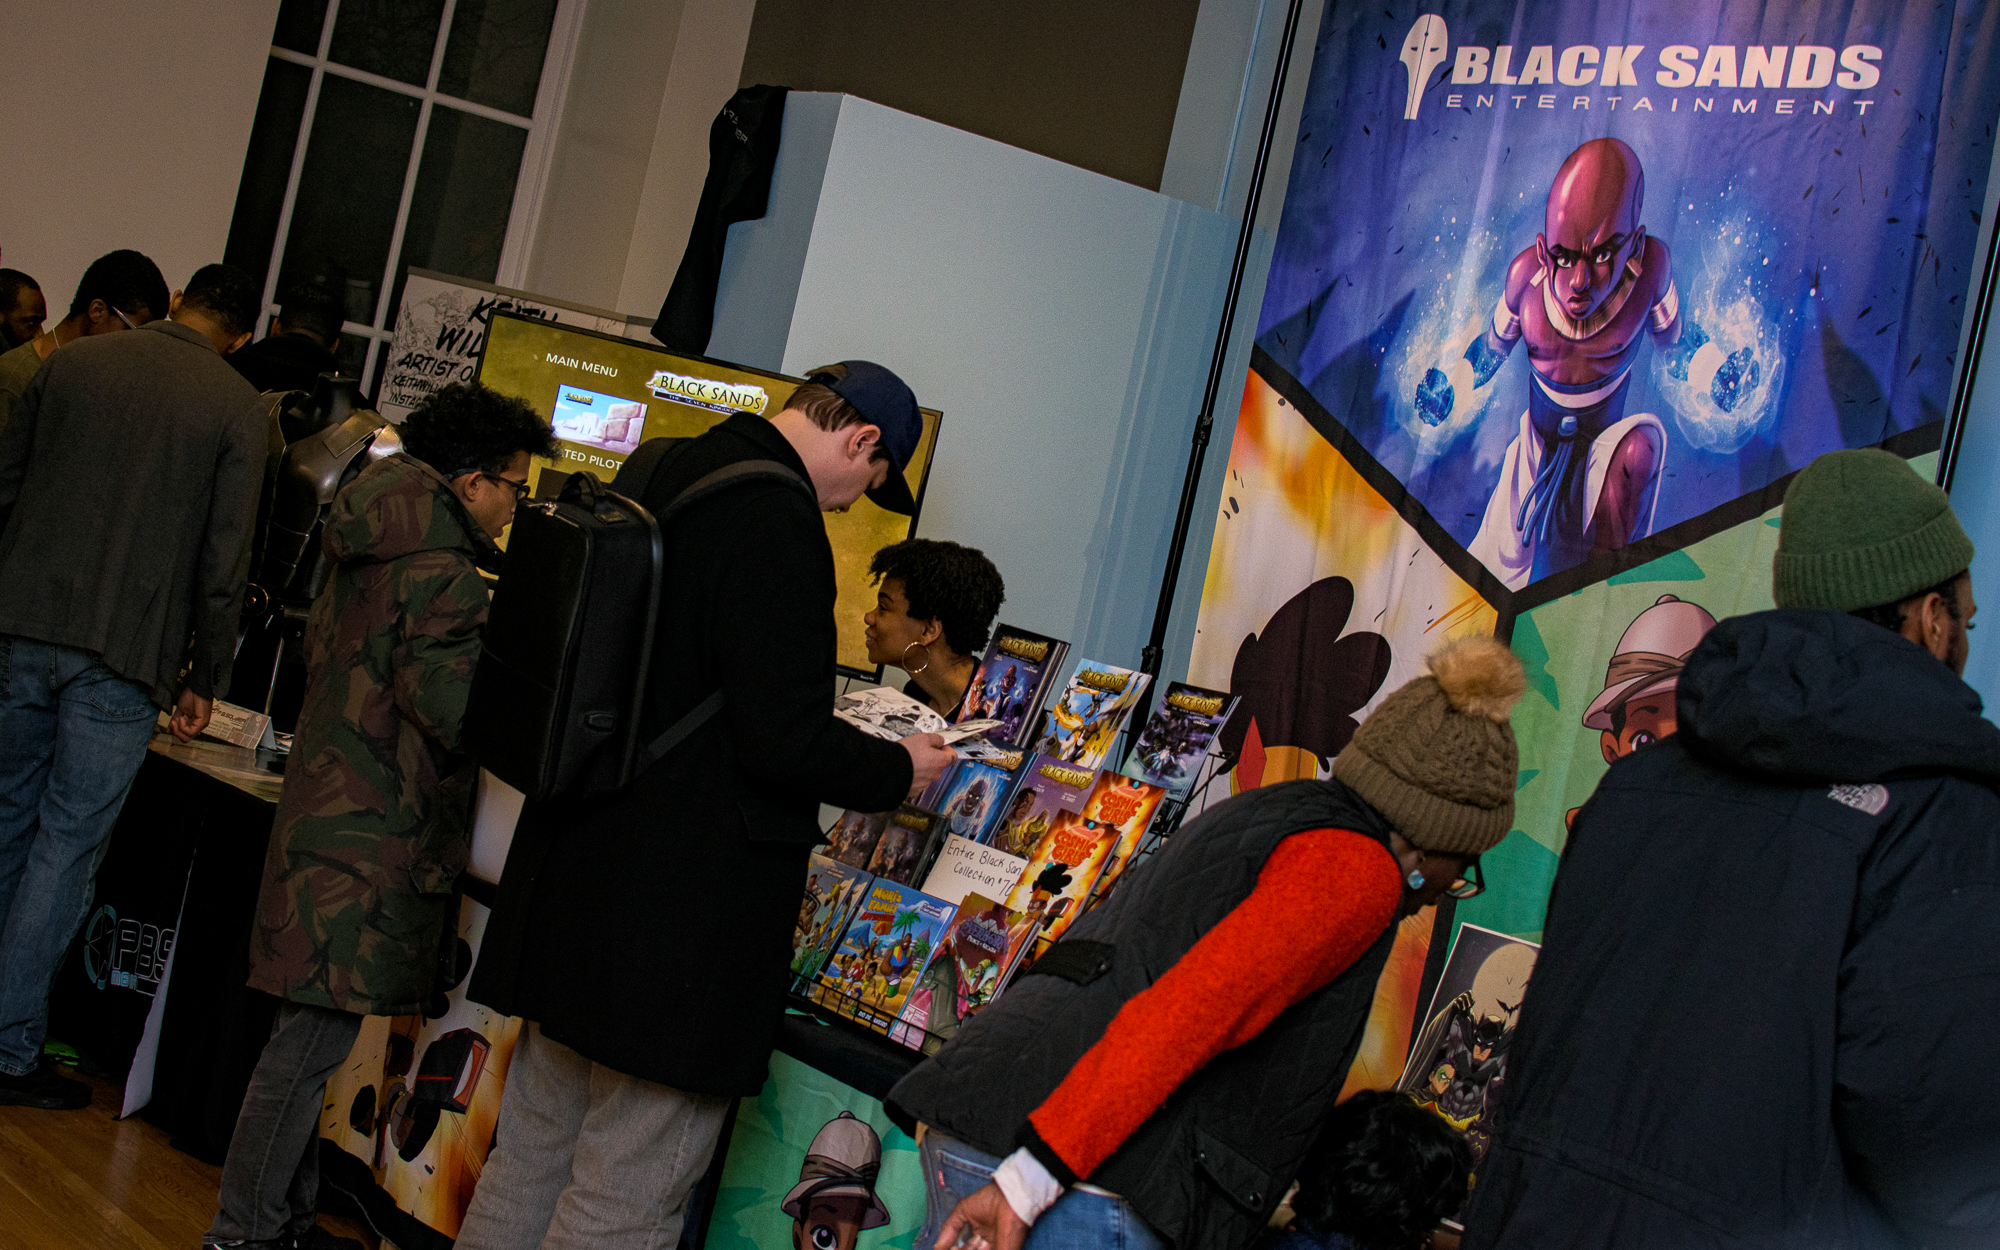 Black Comic Book Festival